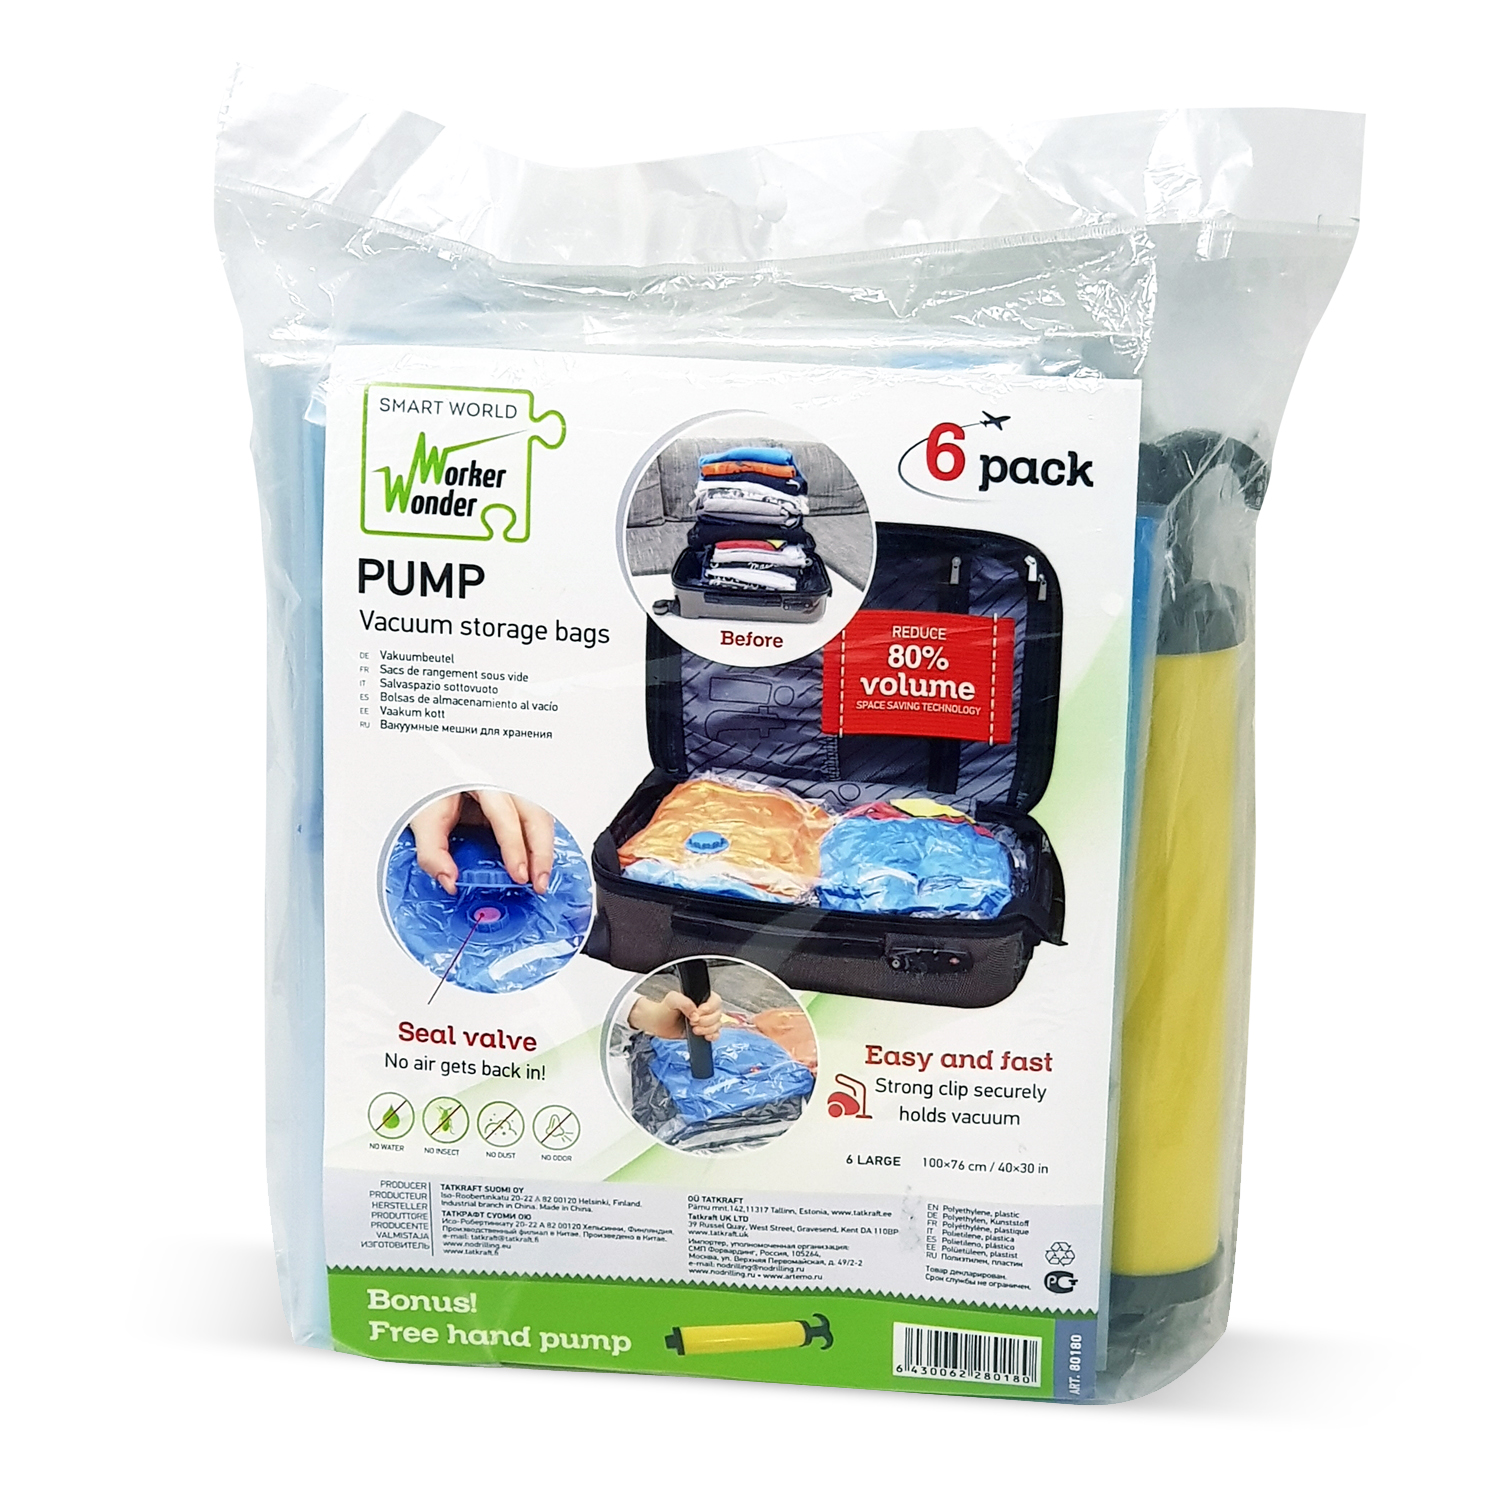 TYEERS Vacuum Storage Bags 6 Pack Premium Jumbo Vacuum Sealer Bags 100x80 cm Works With Any Vacuum Free Hand Pump Included 